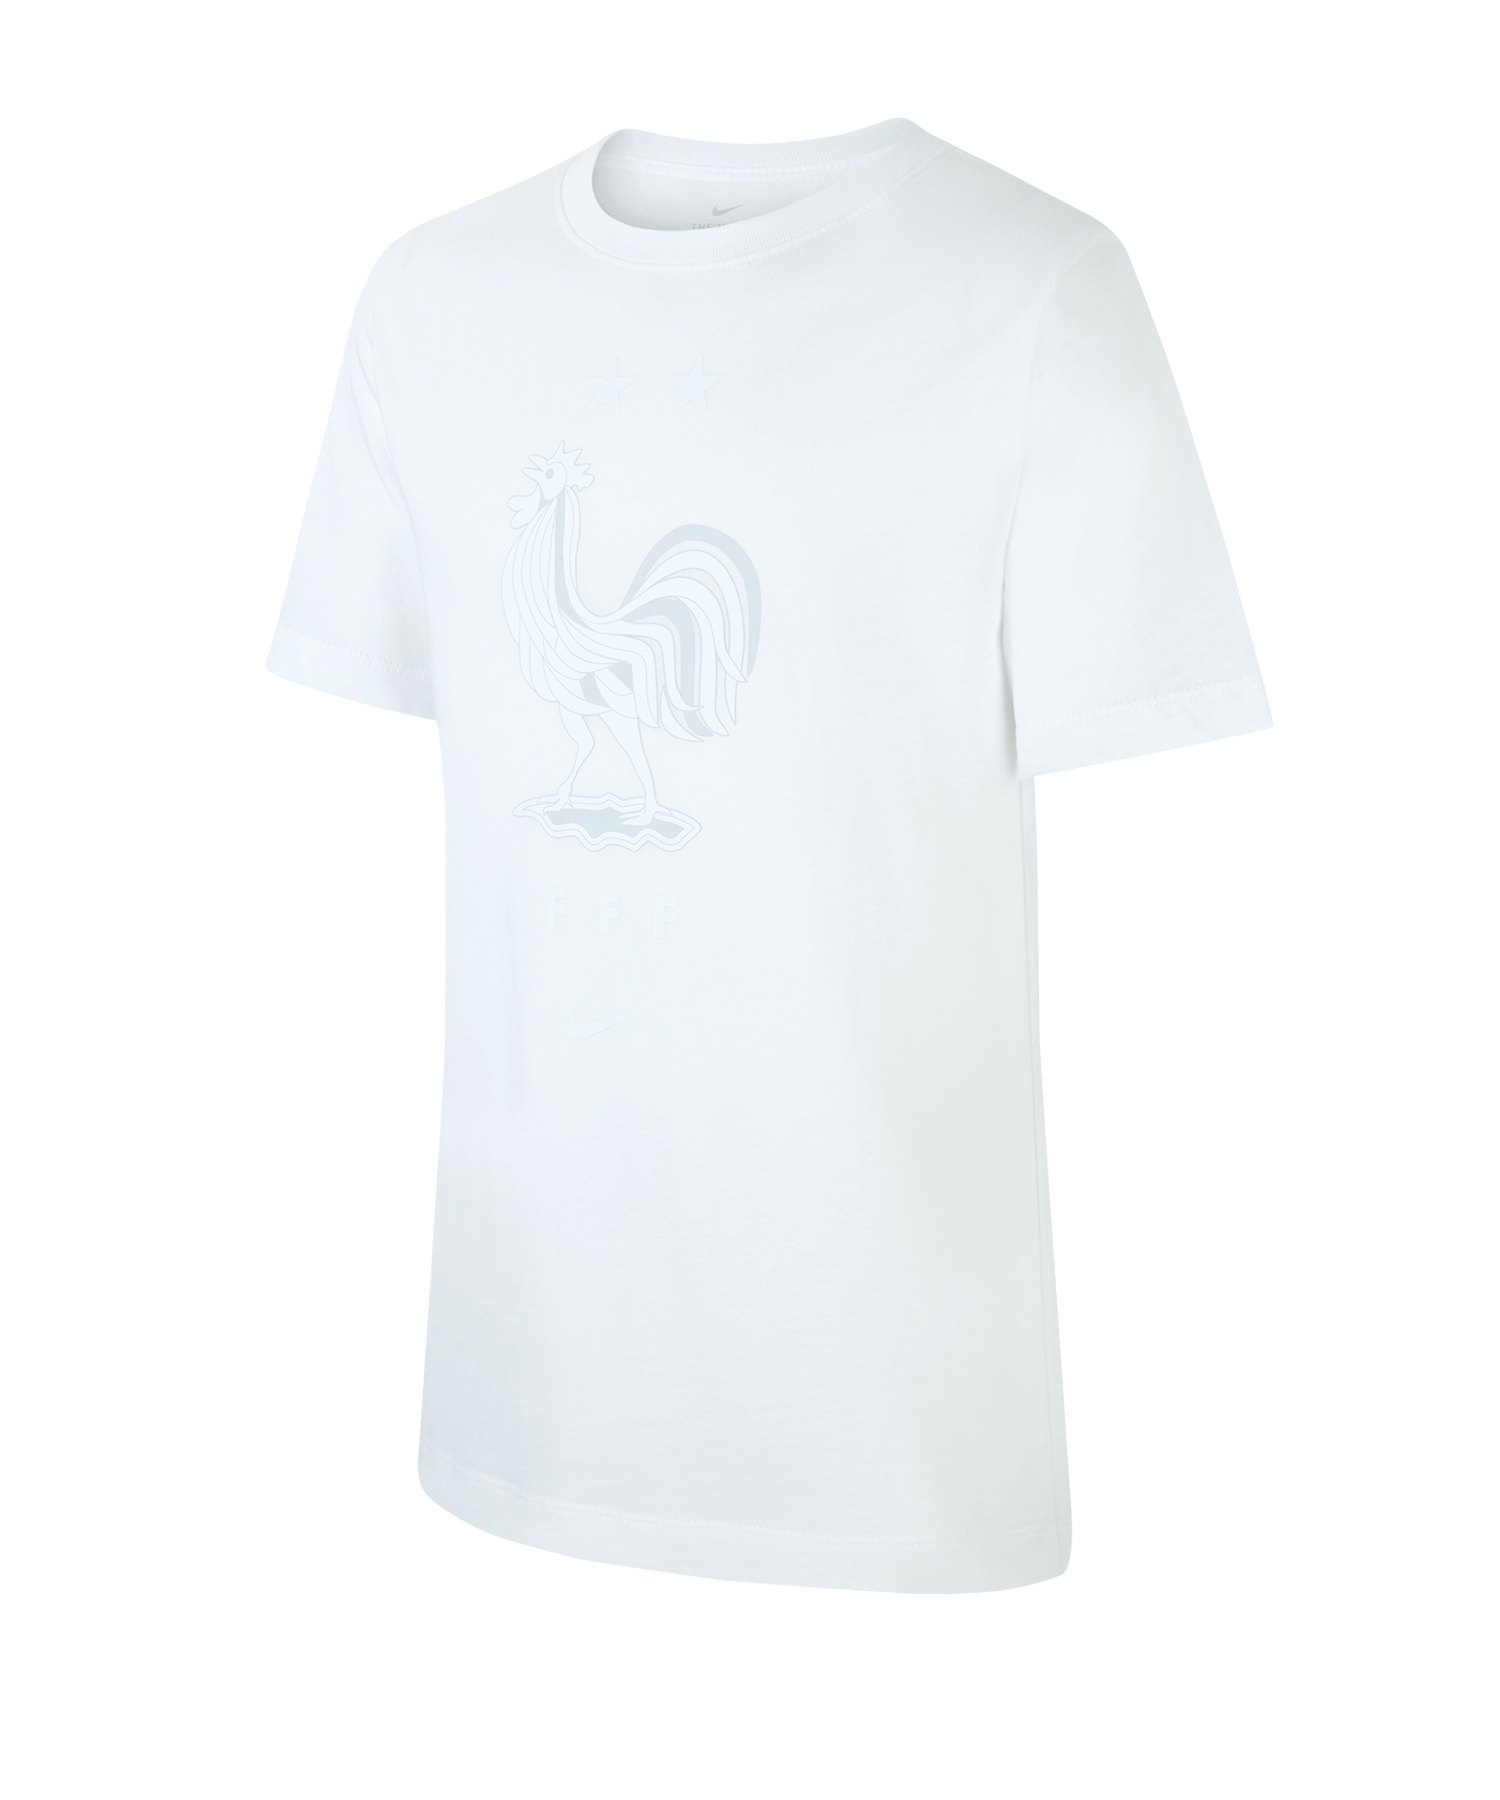 Nike Frankreich Evergreen Crest T-Shirt Kids F100 - weiss